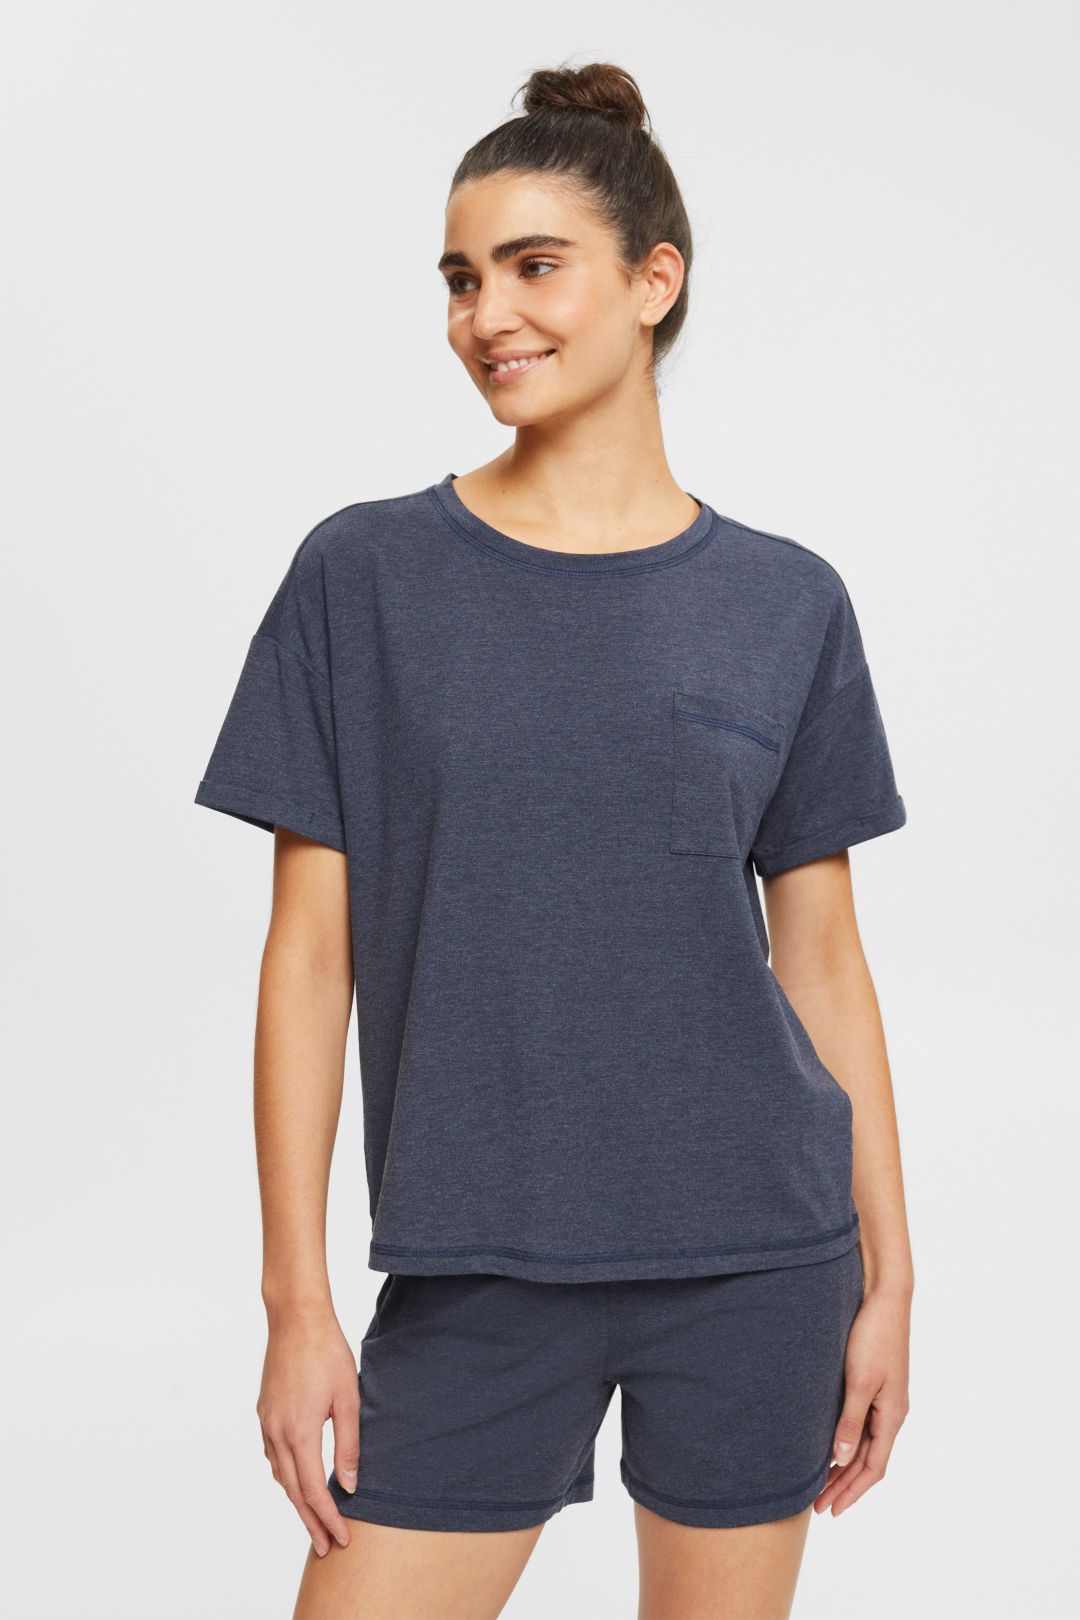 Esprit Ladies T-Shirt in Blue GOOFASH